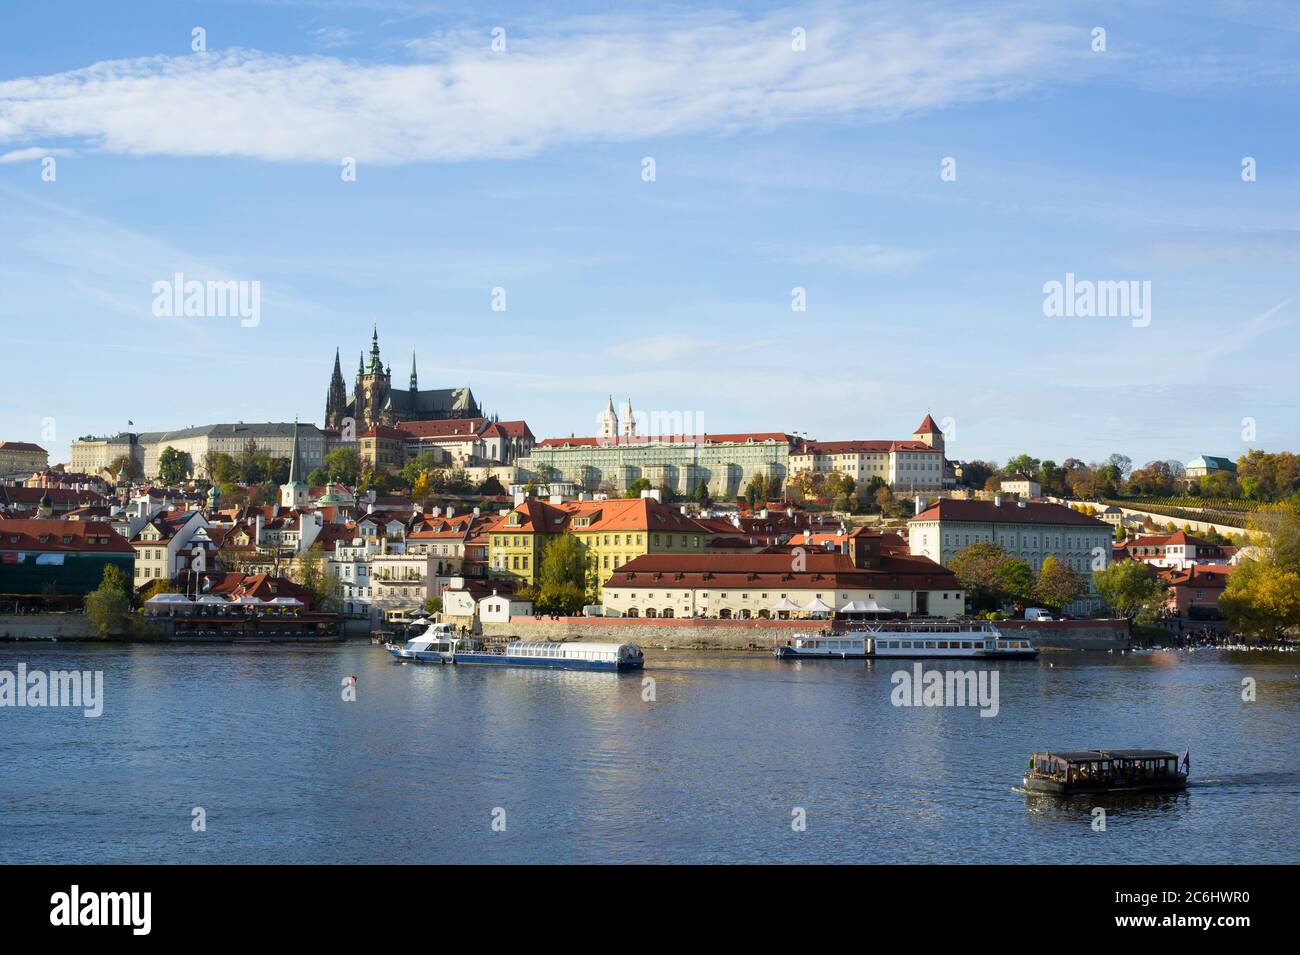 Prager Burg, Hradcany, Prag, Tschechien - Panorama des historischen Teils der Stadt. Dominante Türme der St. Veits Kathedrale. Boote w Stockfoto